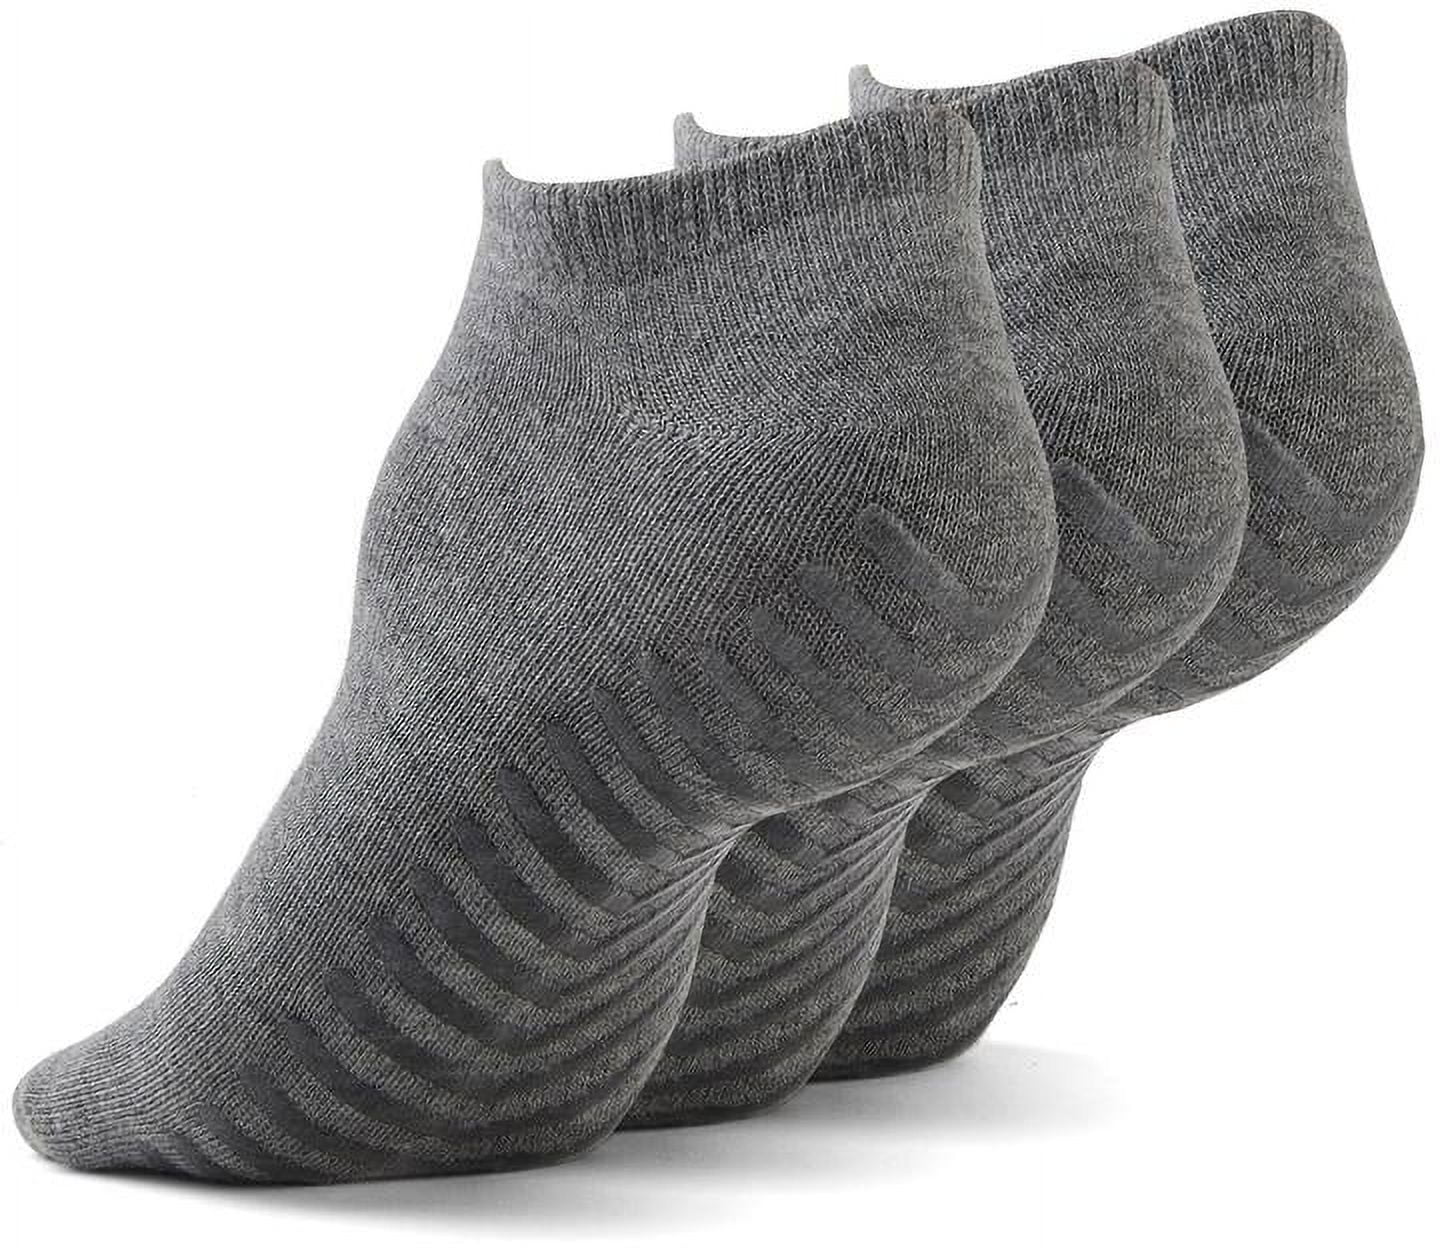 Non Skid Socks for Women or Men, Yoga With Grips, Hospital Socks (3 ...